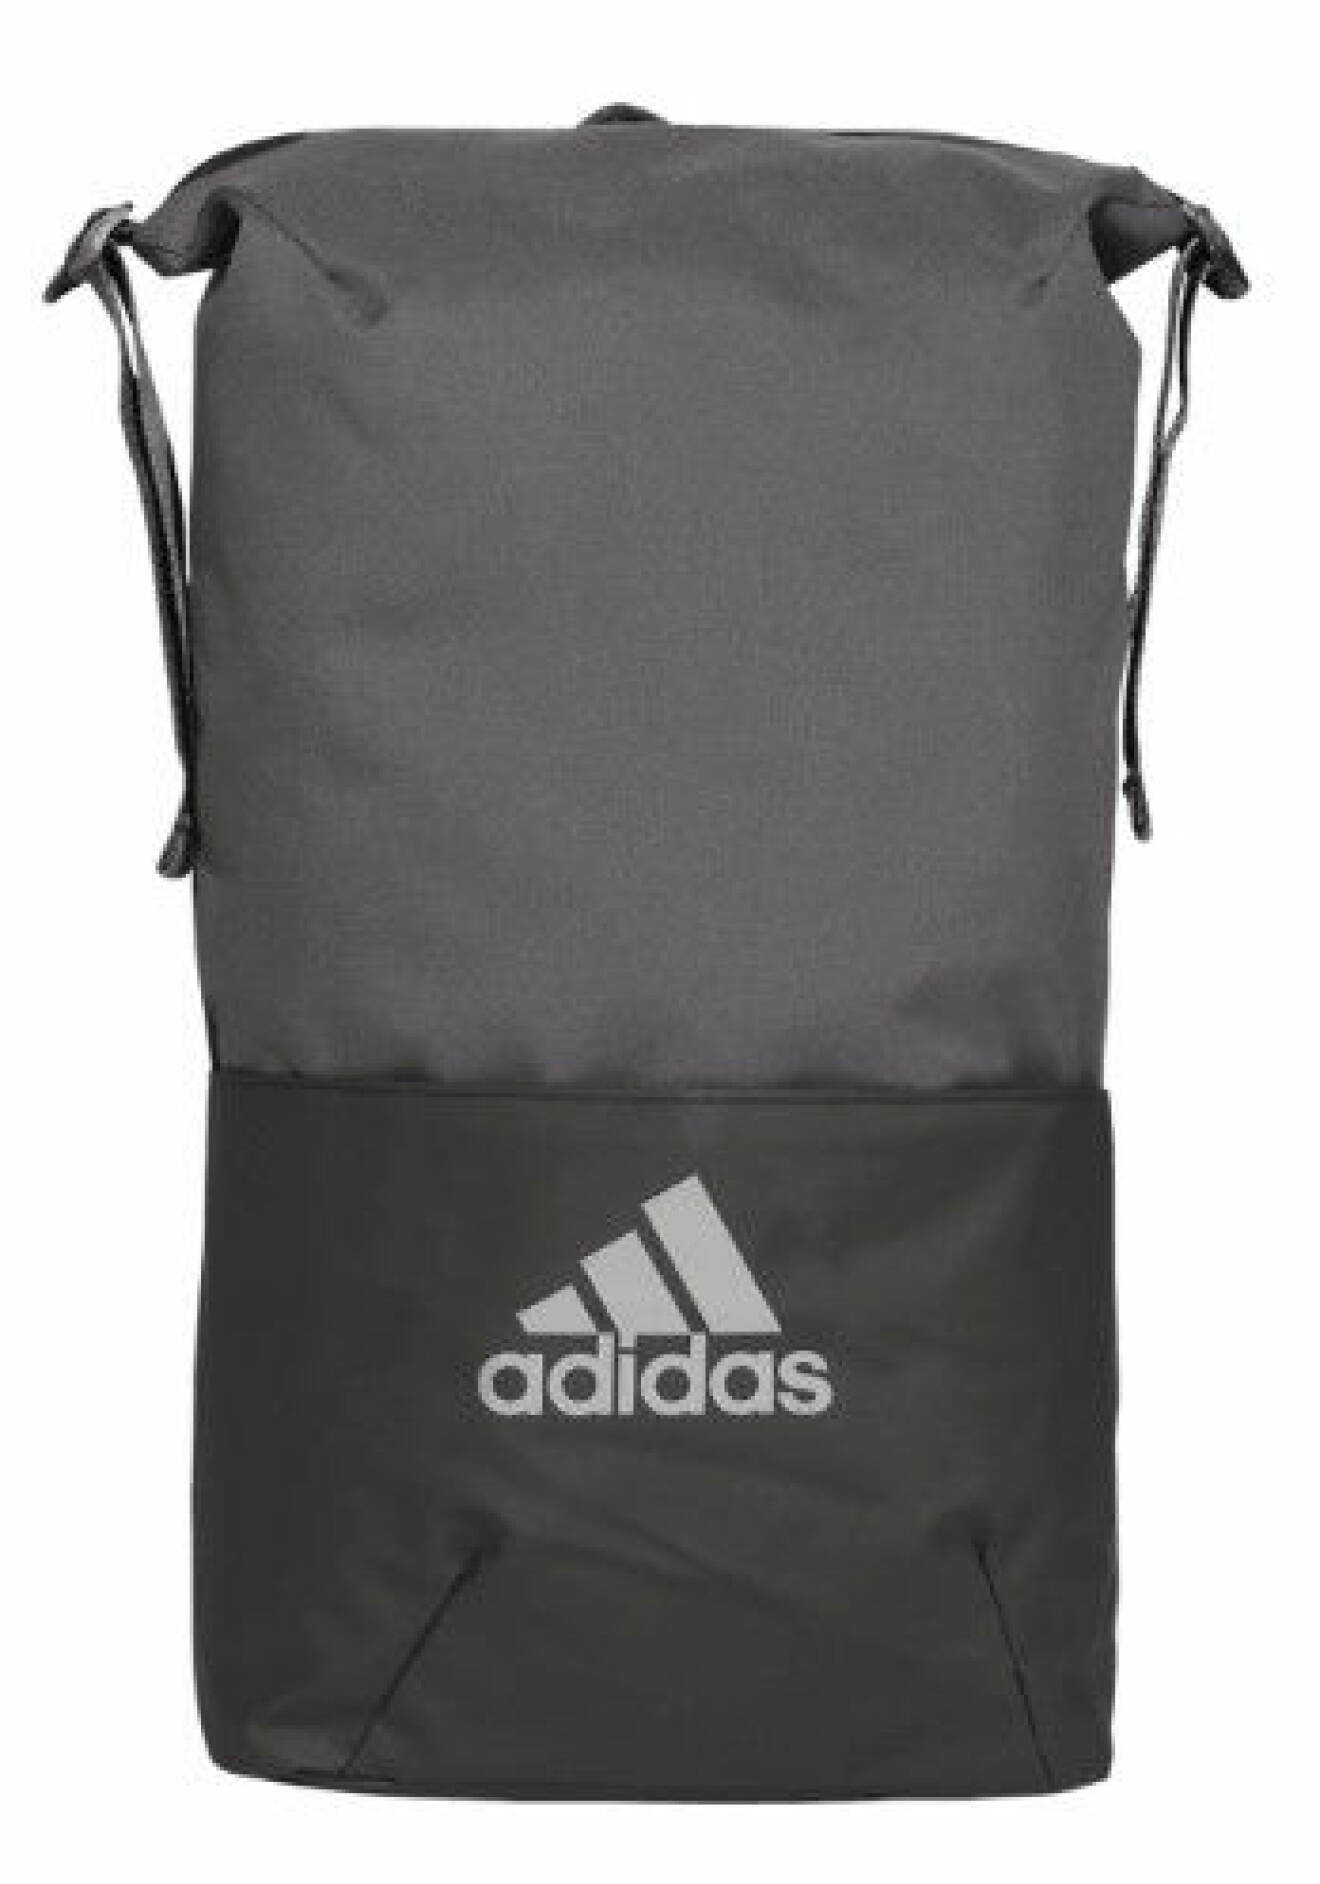 Ryggsäck från Adidas.